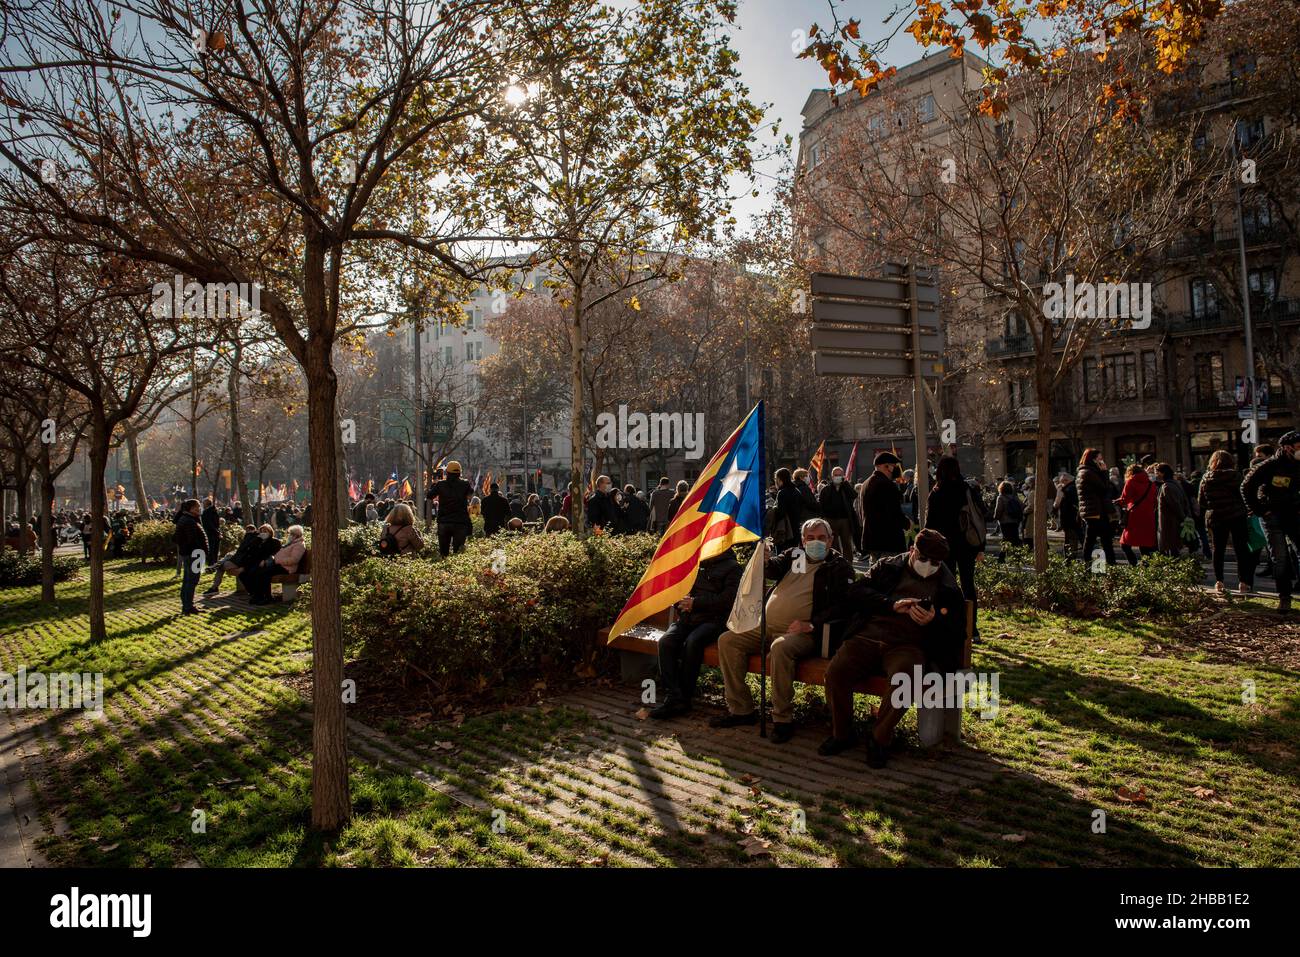 Barcelona, Spanien. 18th Dez 2021. Männer sitzen mit einer katalanischen Fahne für die Unabhängigkeit, während sich die Menschen in Barcelona versammeln, um das Bildungssystem zu unterstützen, das das Erlernen der katalanischen Sprache in den Schulen Kataloniens garantiert. Quelle: Jordi Boixareu/Alamy Live News Stockfoto